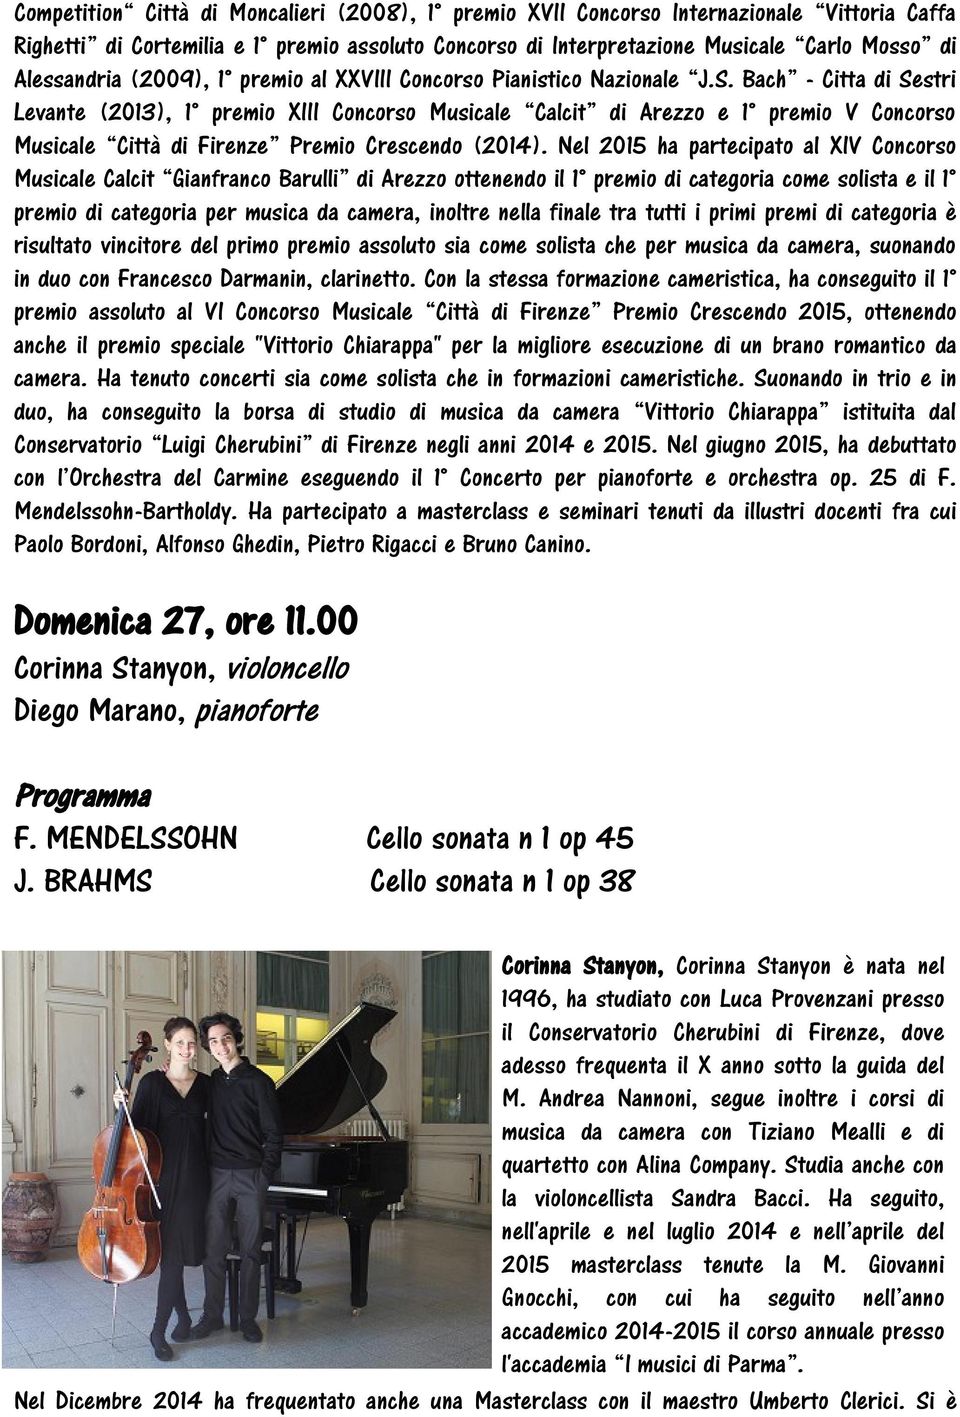 Bach - Citta di Sestri Levante (2013), 1 premio XIII Concorso Musicale Calcit di Arezzo e 1 premio V Concorso Musicale Città di Firenze Premio Crescendo (2014).